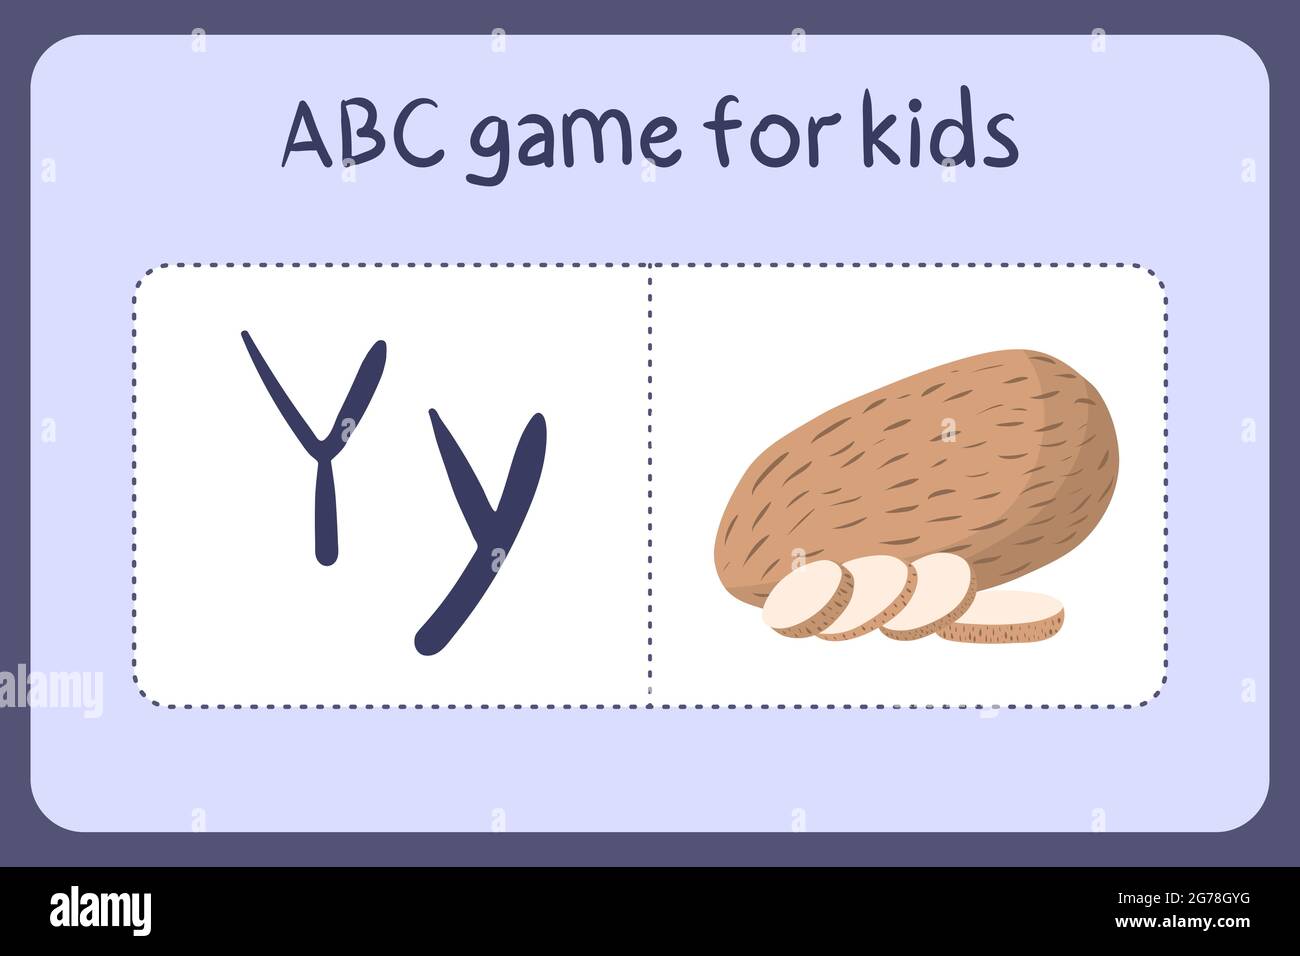 Kind Alphabet Mini-Spiele im Cartoon-Stil mit dem Buchstaben Y - yam. Vektor-Illustration für Spiel-Design - Schneiden und spielen. Lerne abc mit Flash-Karten für Obst und Gemüse. Stock Vektor